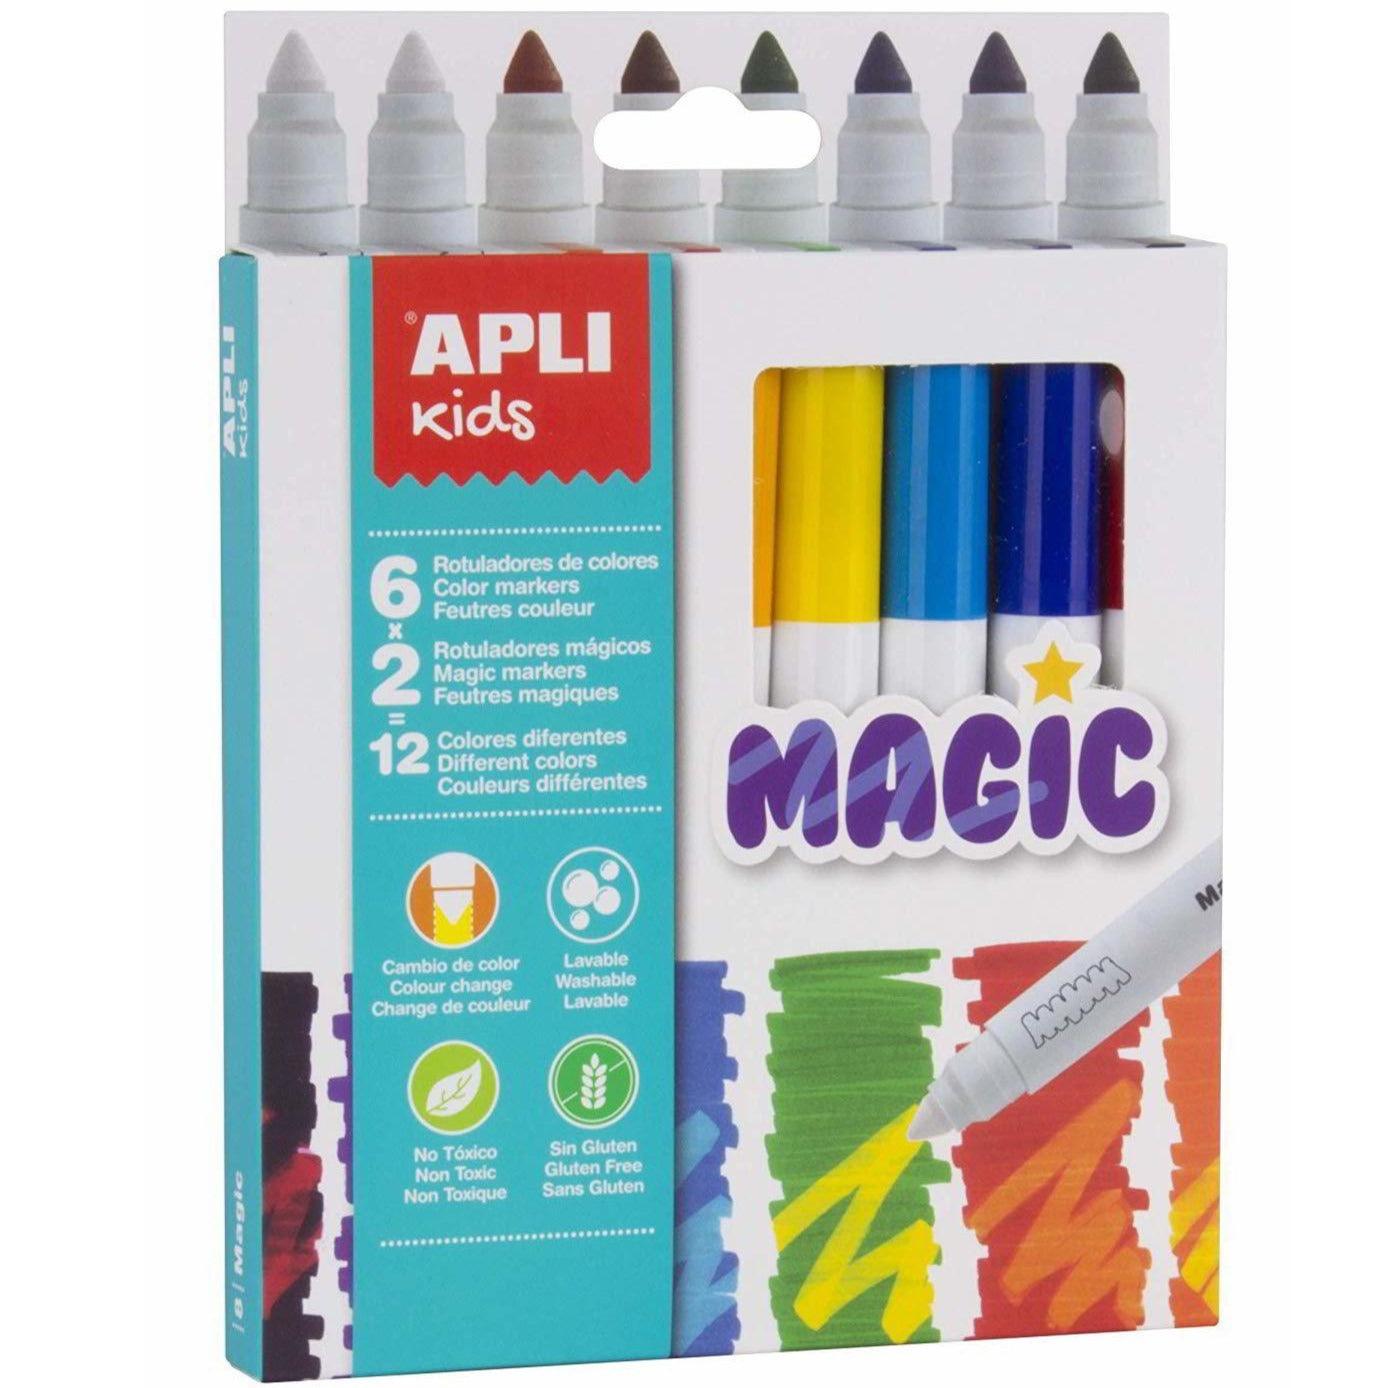 Apli Kids: magiczne flamastry 8 kolorów - Noski Noski